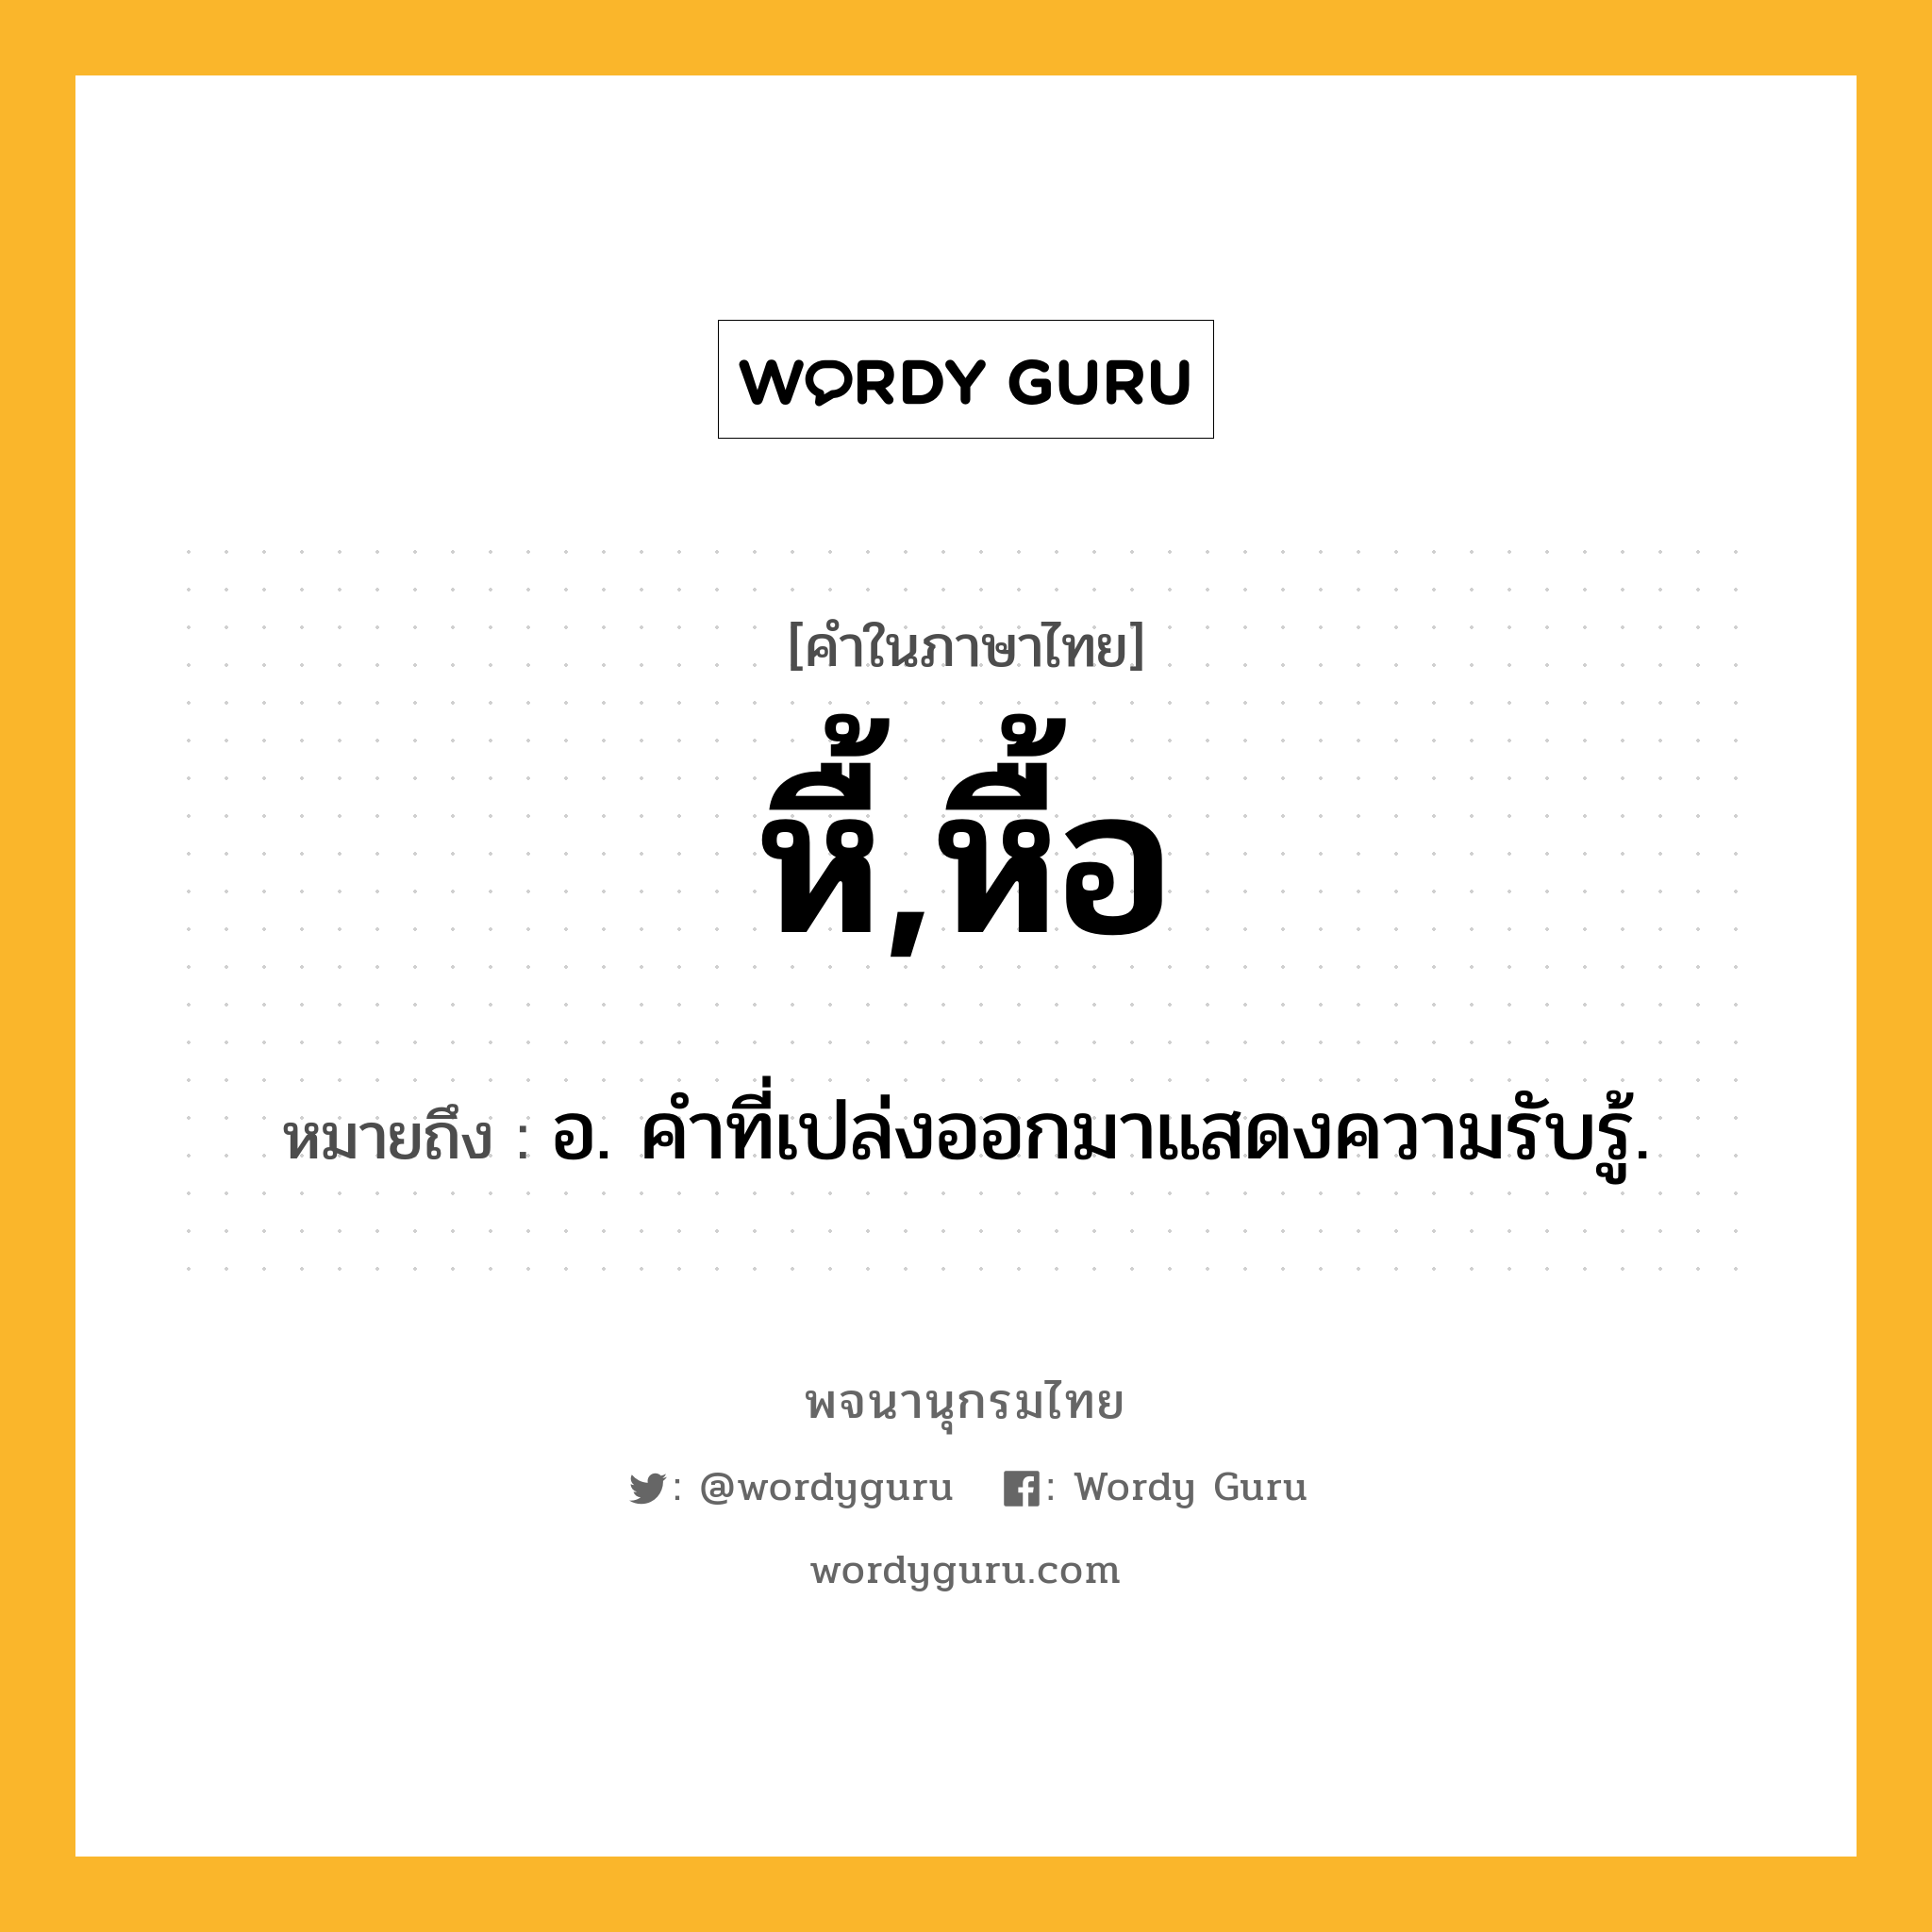 หื้,หื้อ หมายถึงอะไร?, คำในภาษาไทย หื้,หื้อ หมายถึง อ. คำที่เปล่งออกมาแสดงความรับรู้.